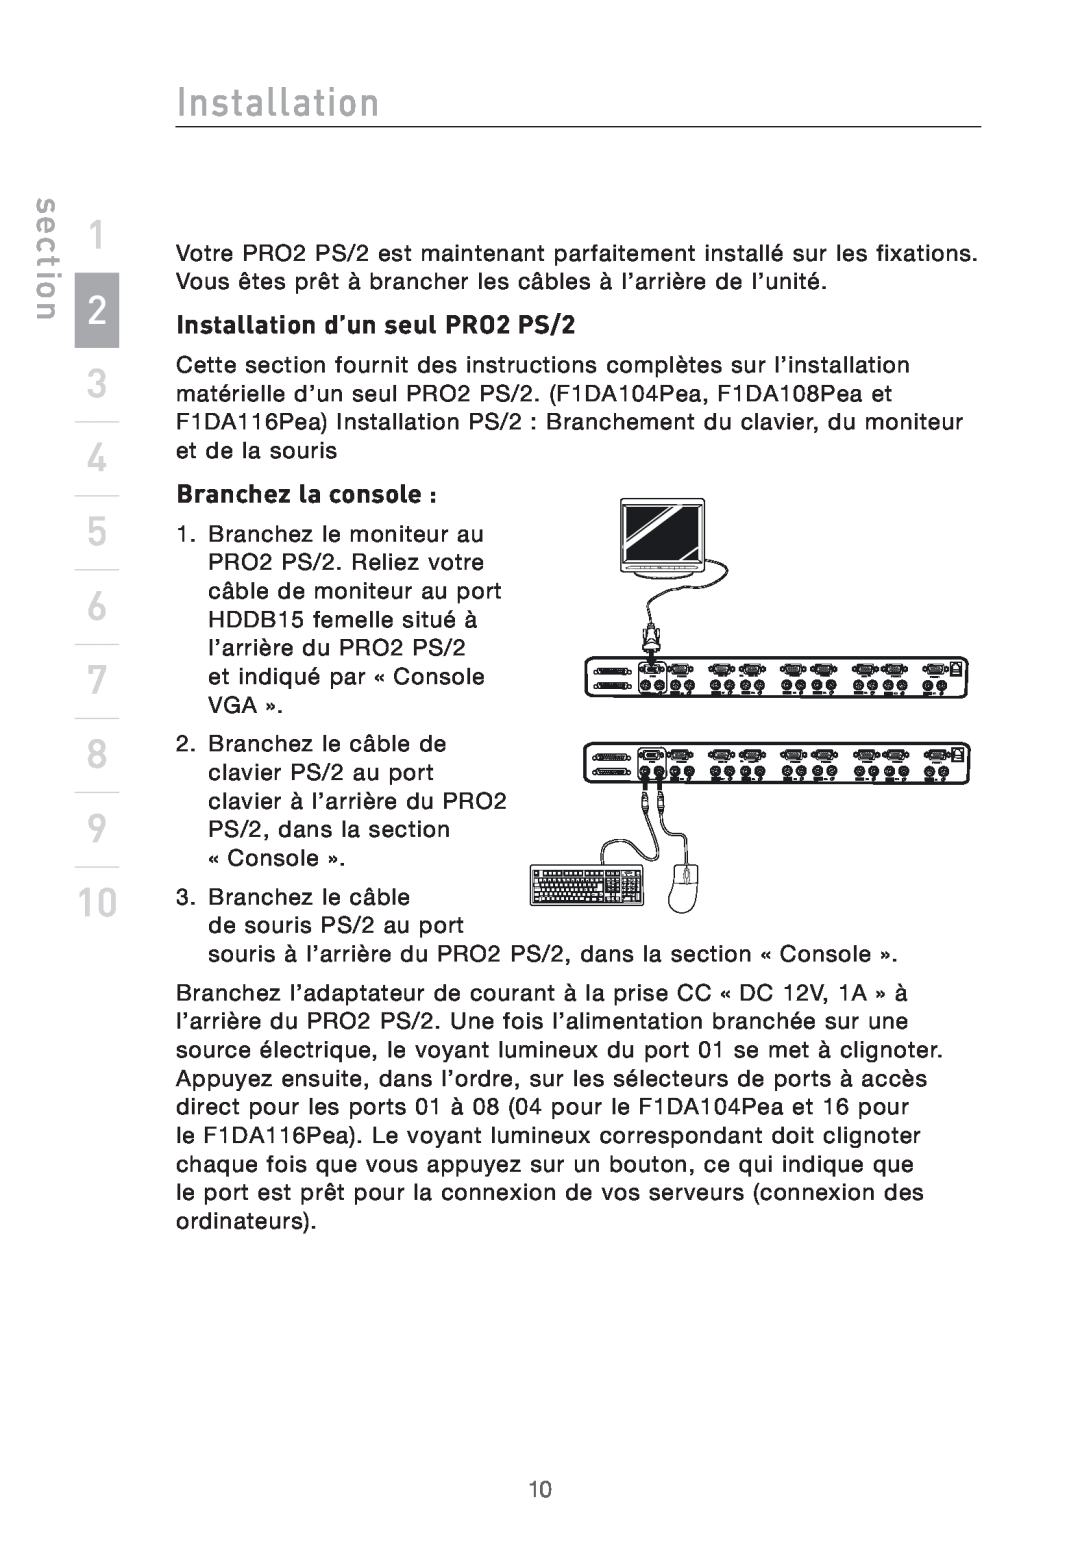 Belkin user manual Installation d’un seul PRO2 PS/2, Branchez la console, section 